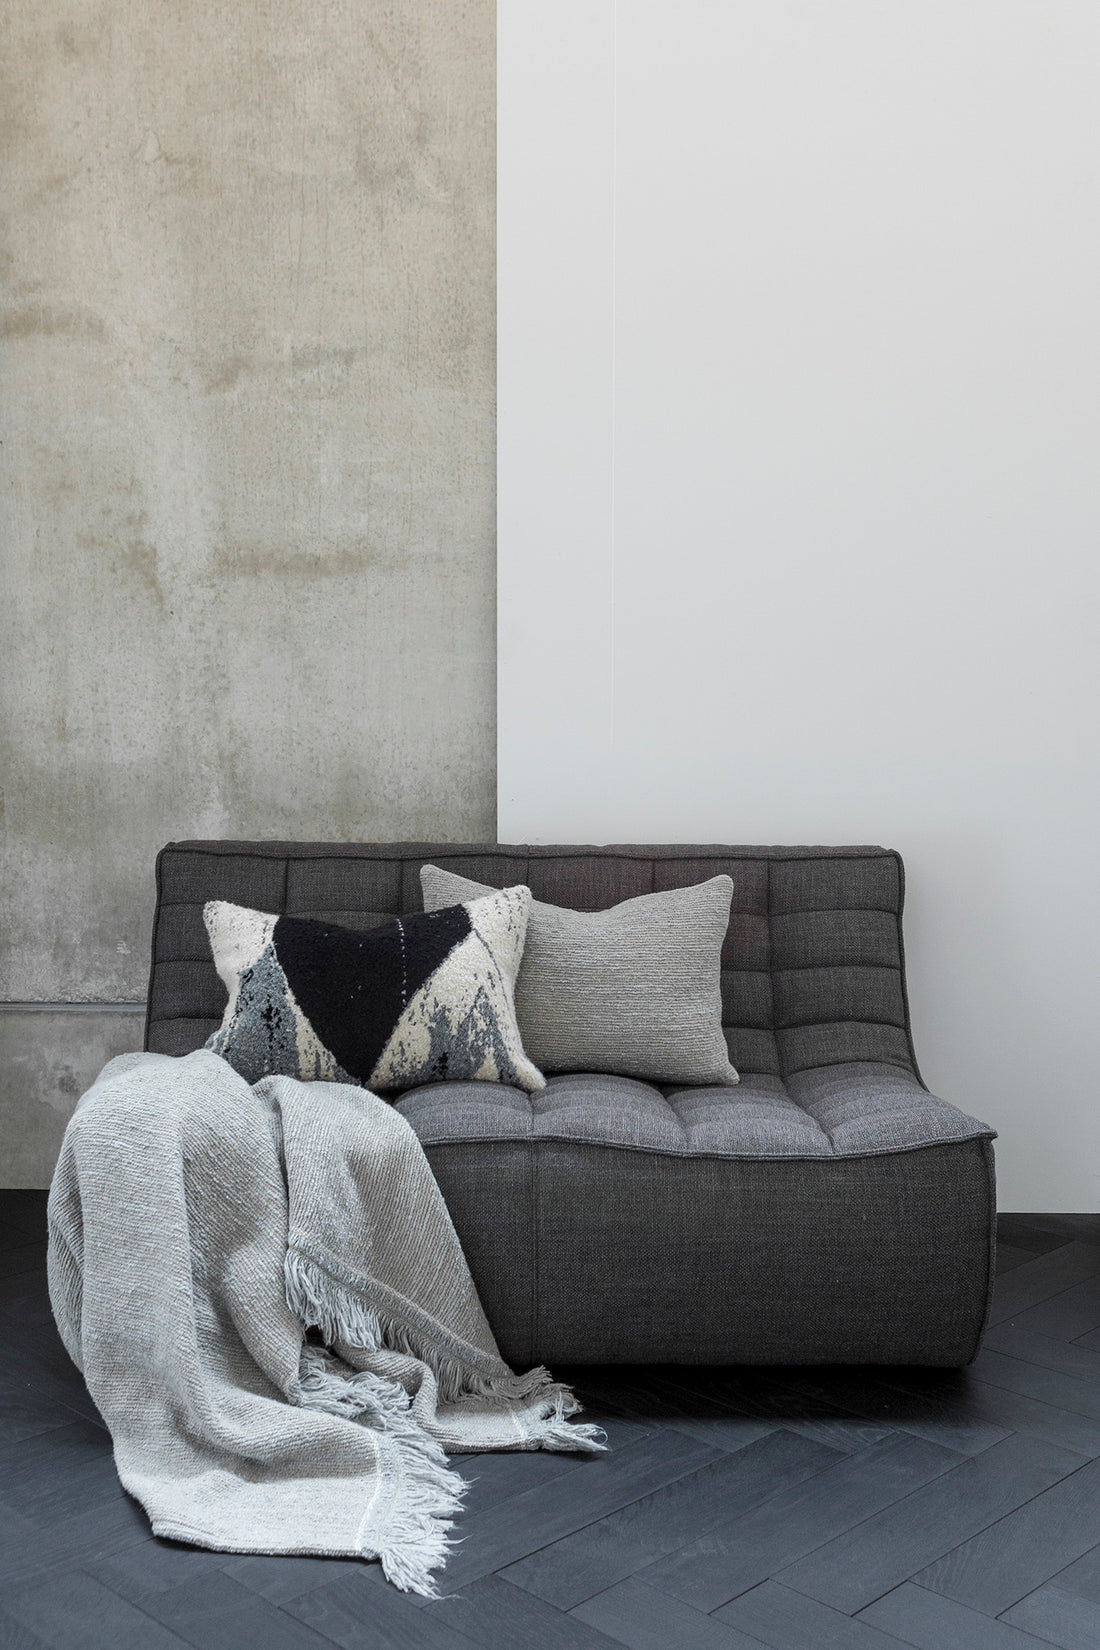 N701 2 Seater Sofa, Dark Grey